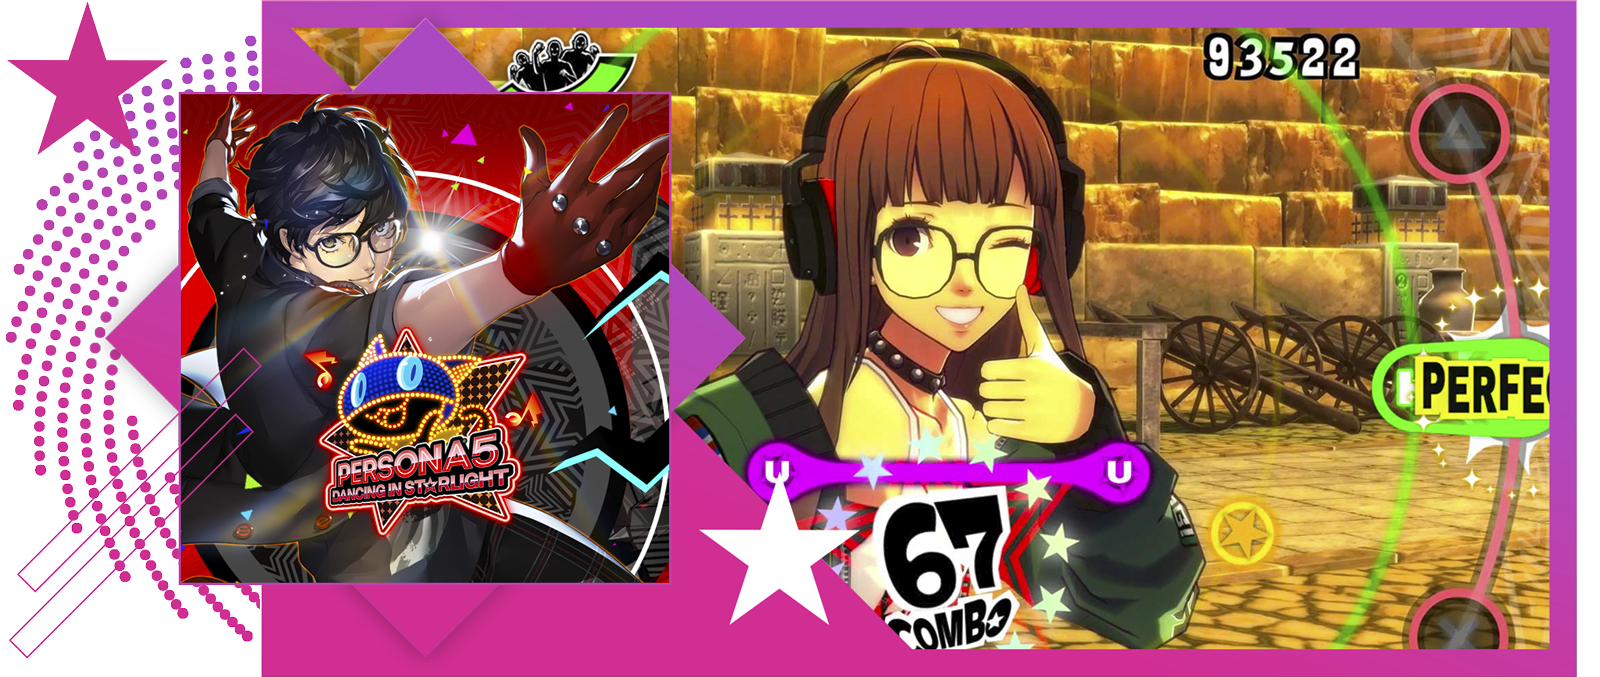 Лучшие ритмичные игры – изображение с обложкой и игровым процессом Persona 5: Dancing in Starlight.